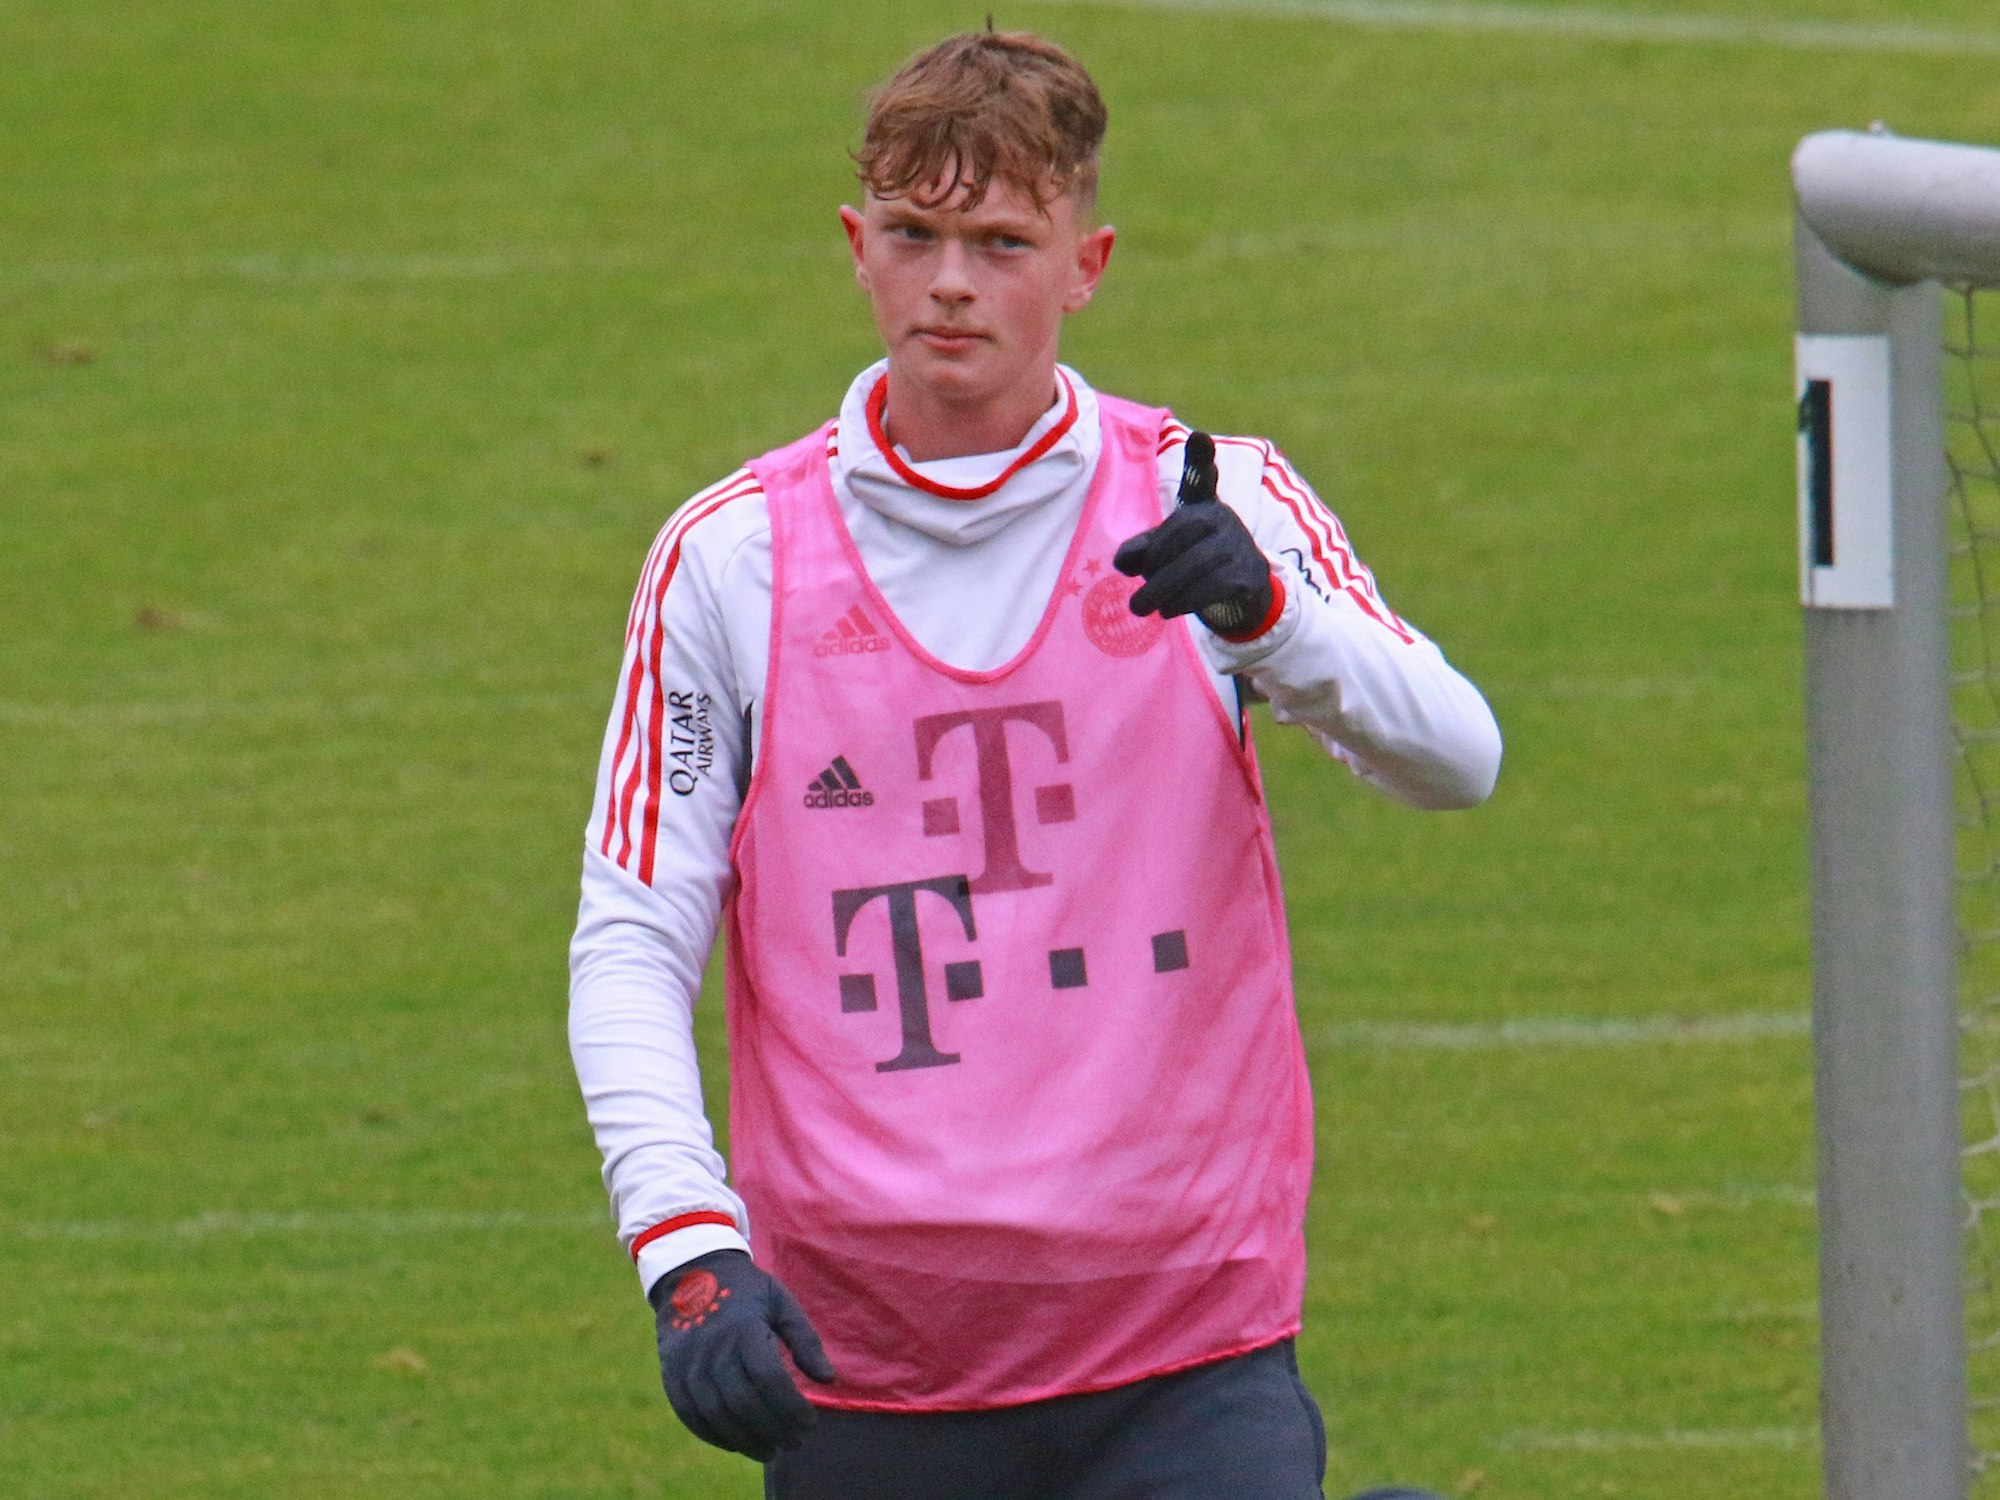 Paul Wanner vomFC Bayern München gestikuliert im Training.